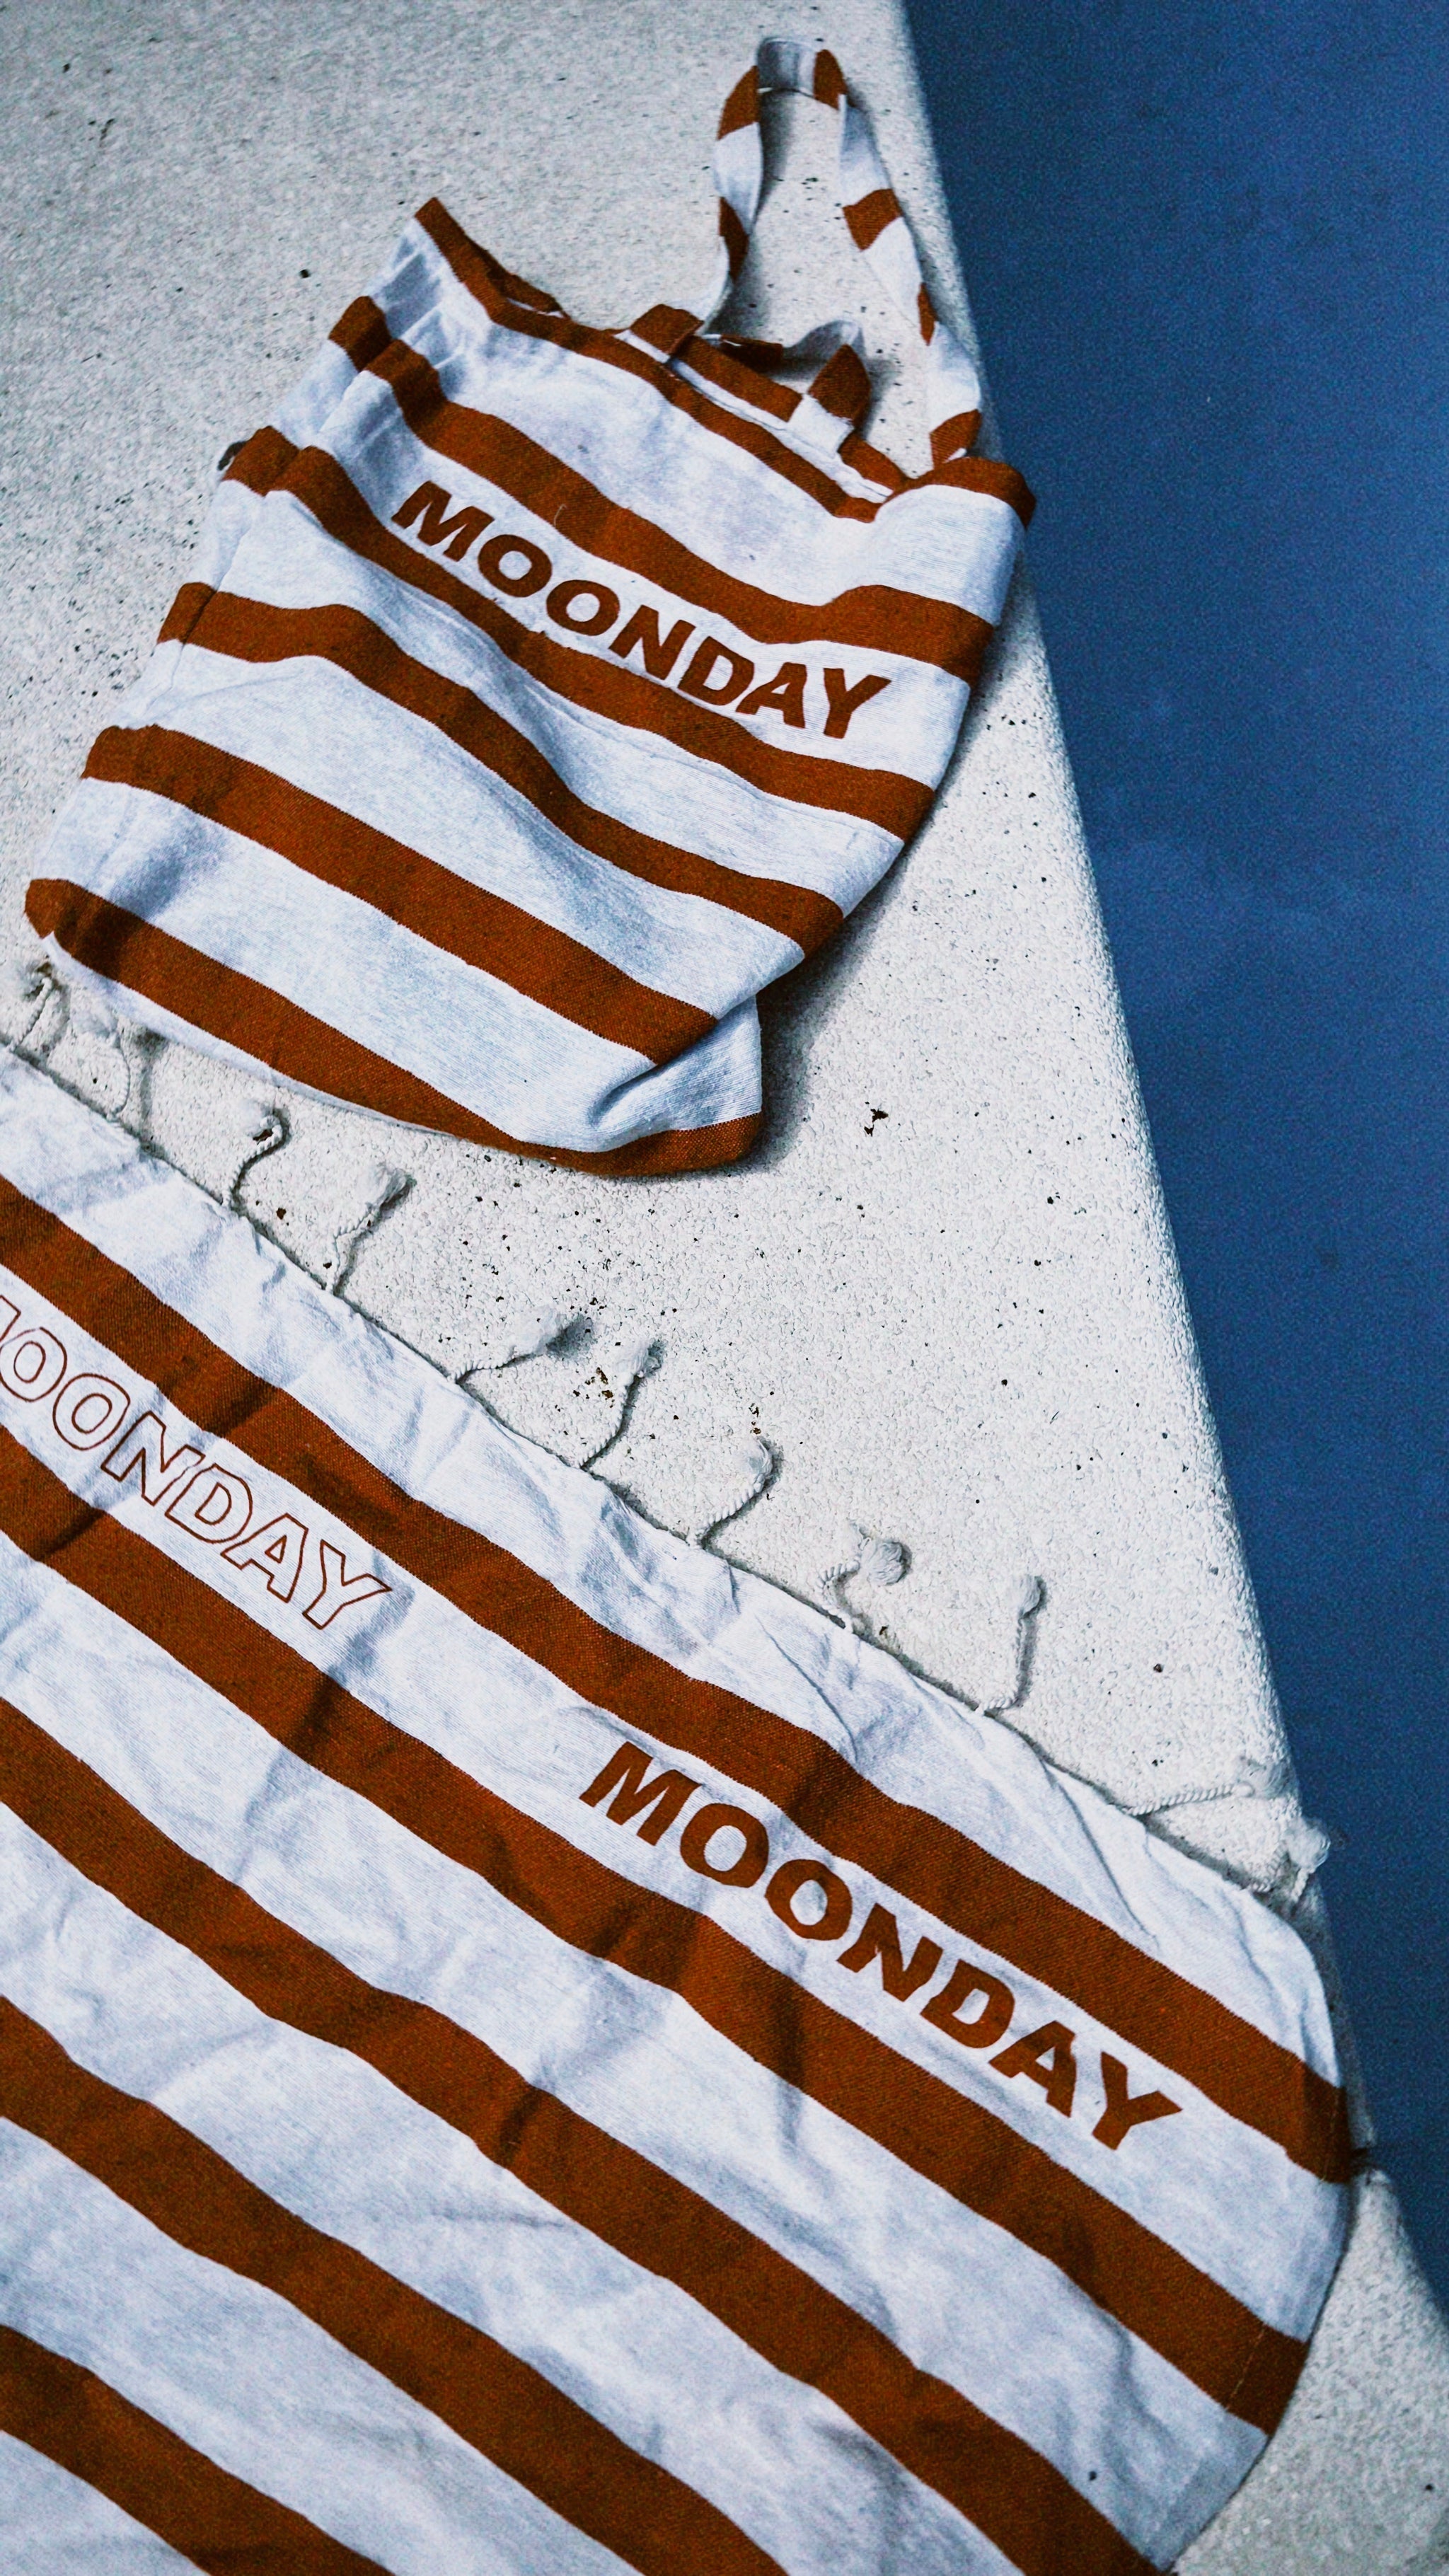 Moonday towel